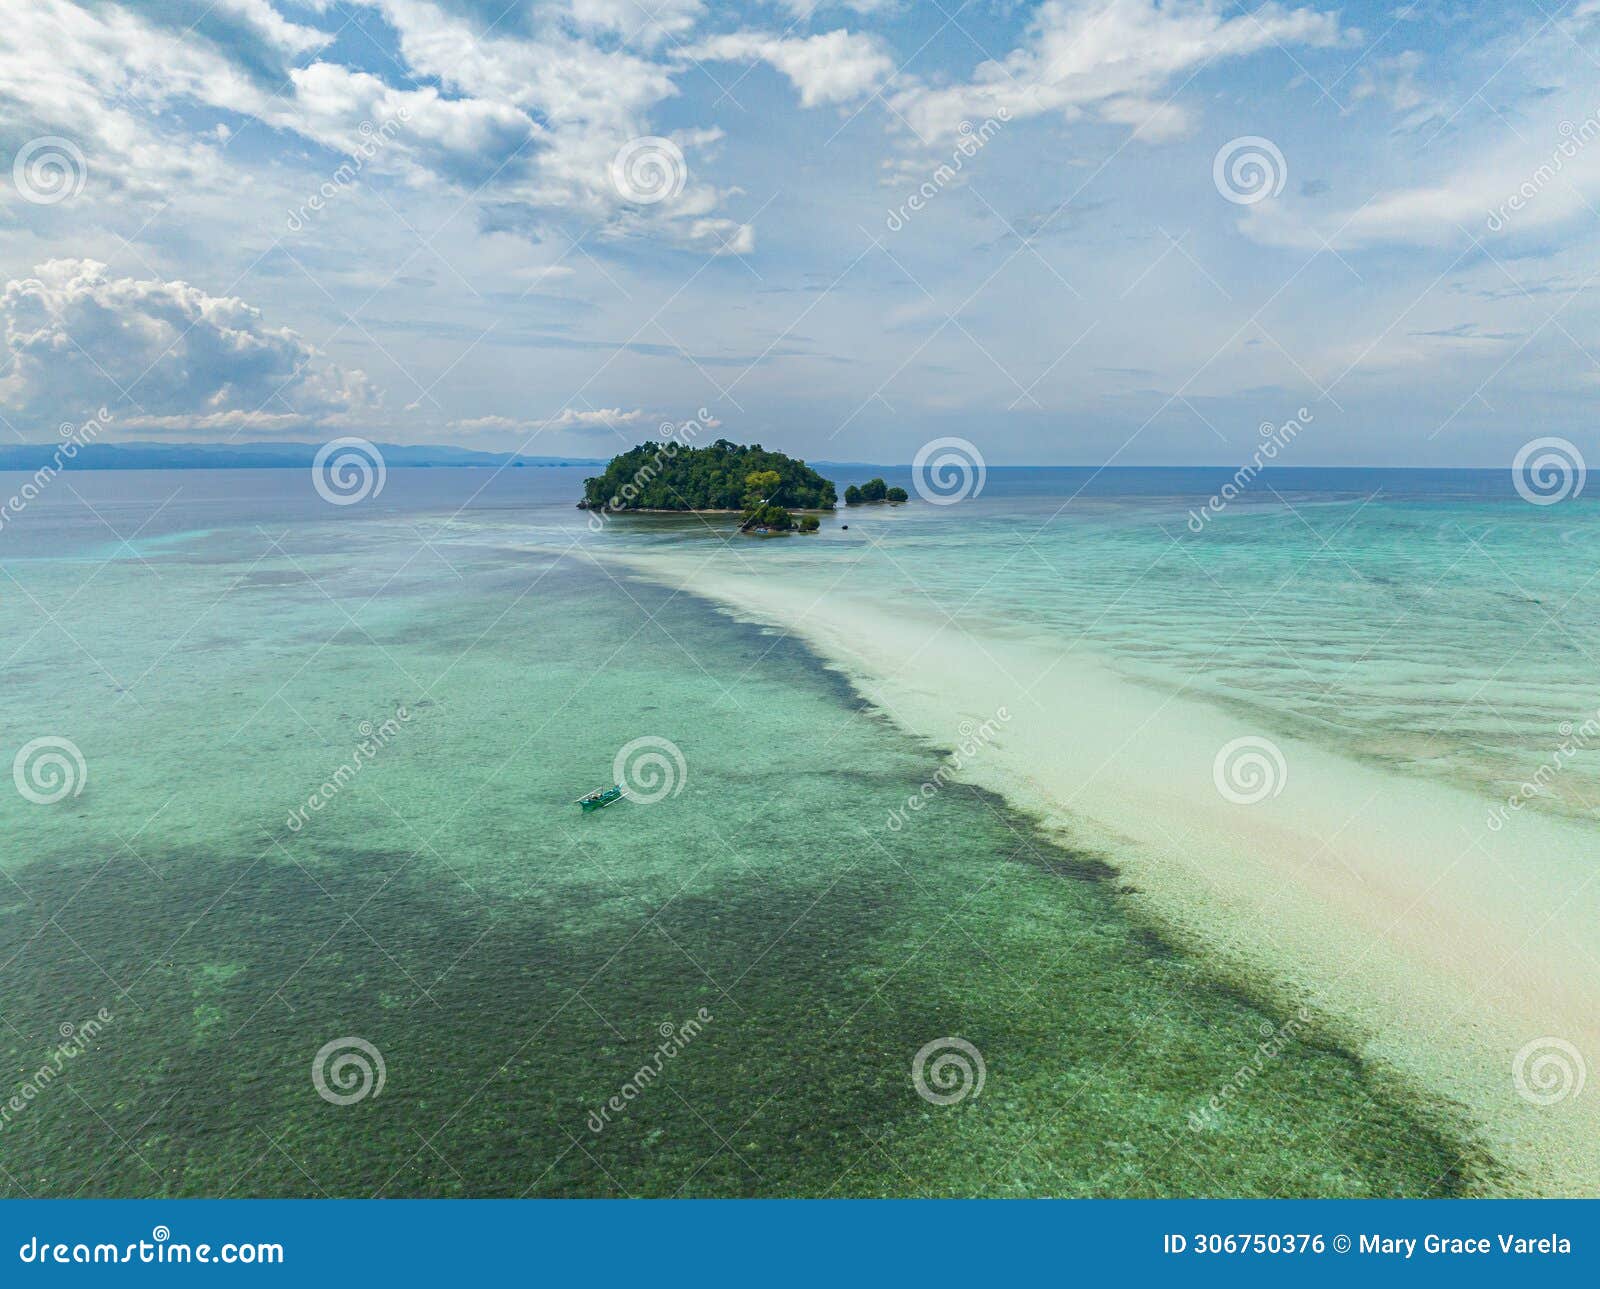 tropical islands in barobo, surigao del sur. philippines.